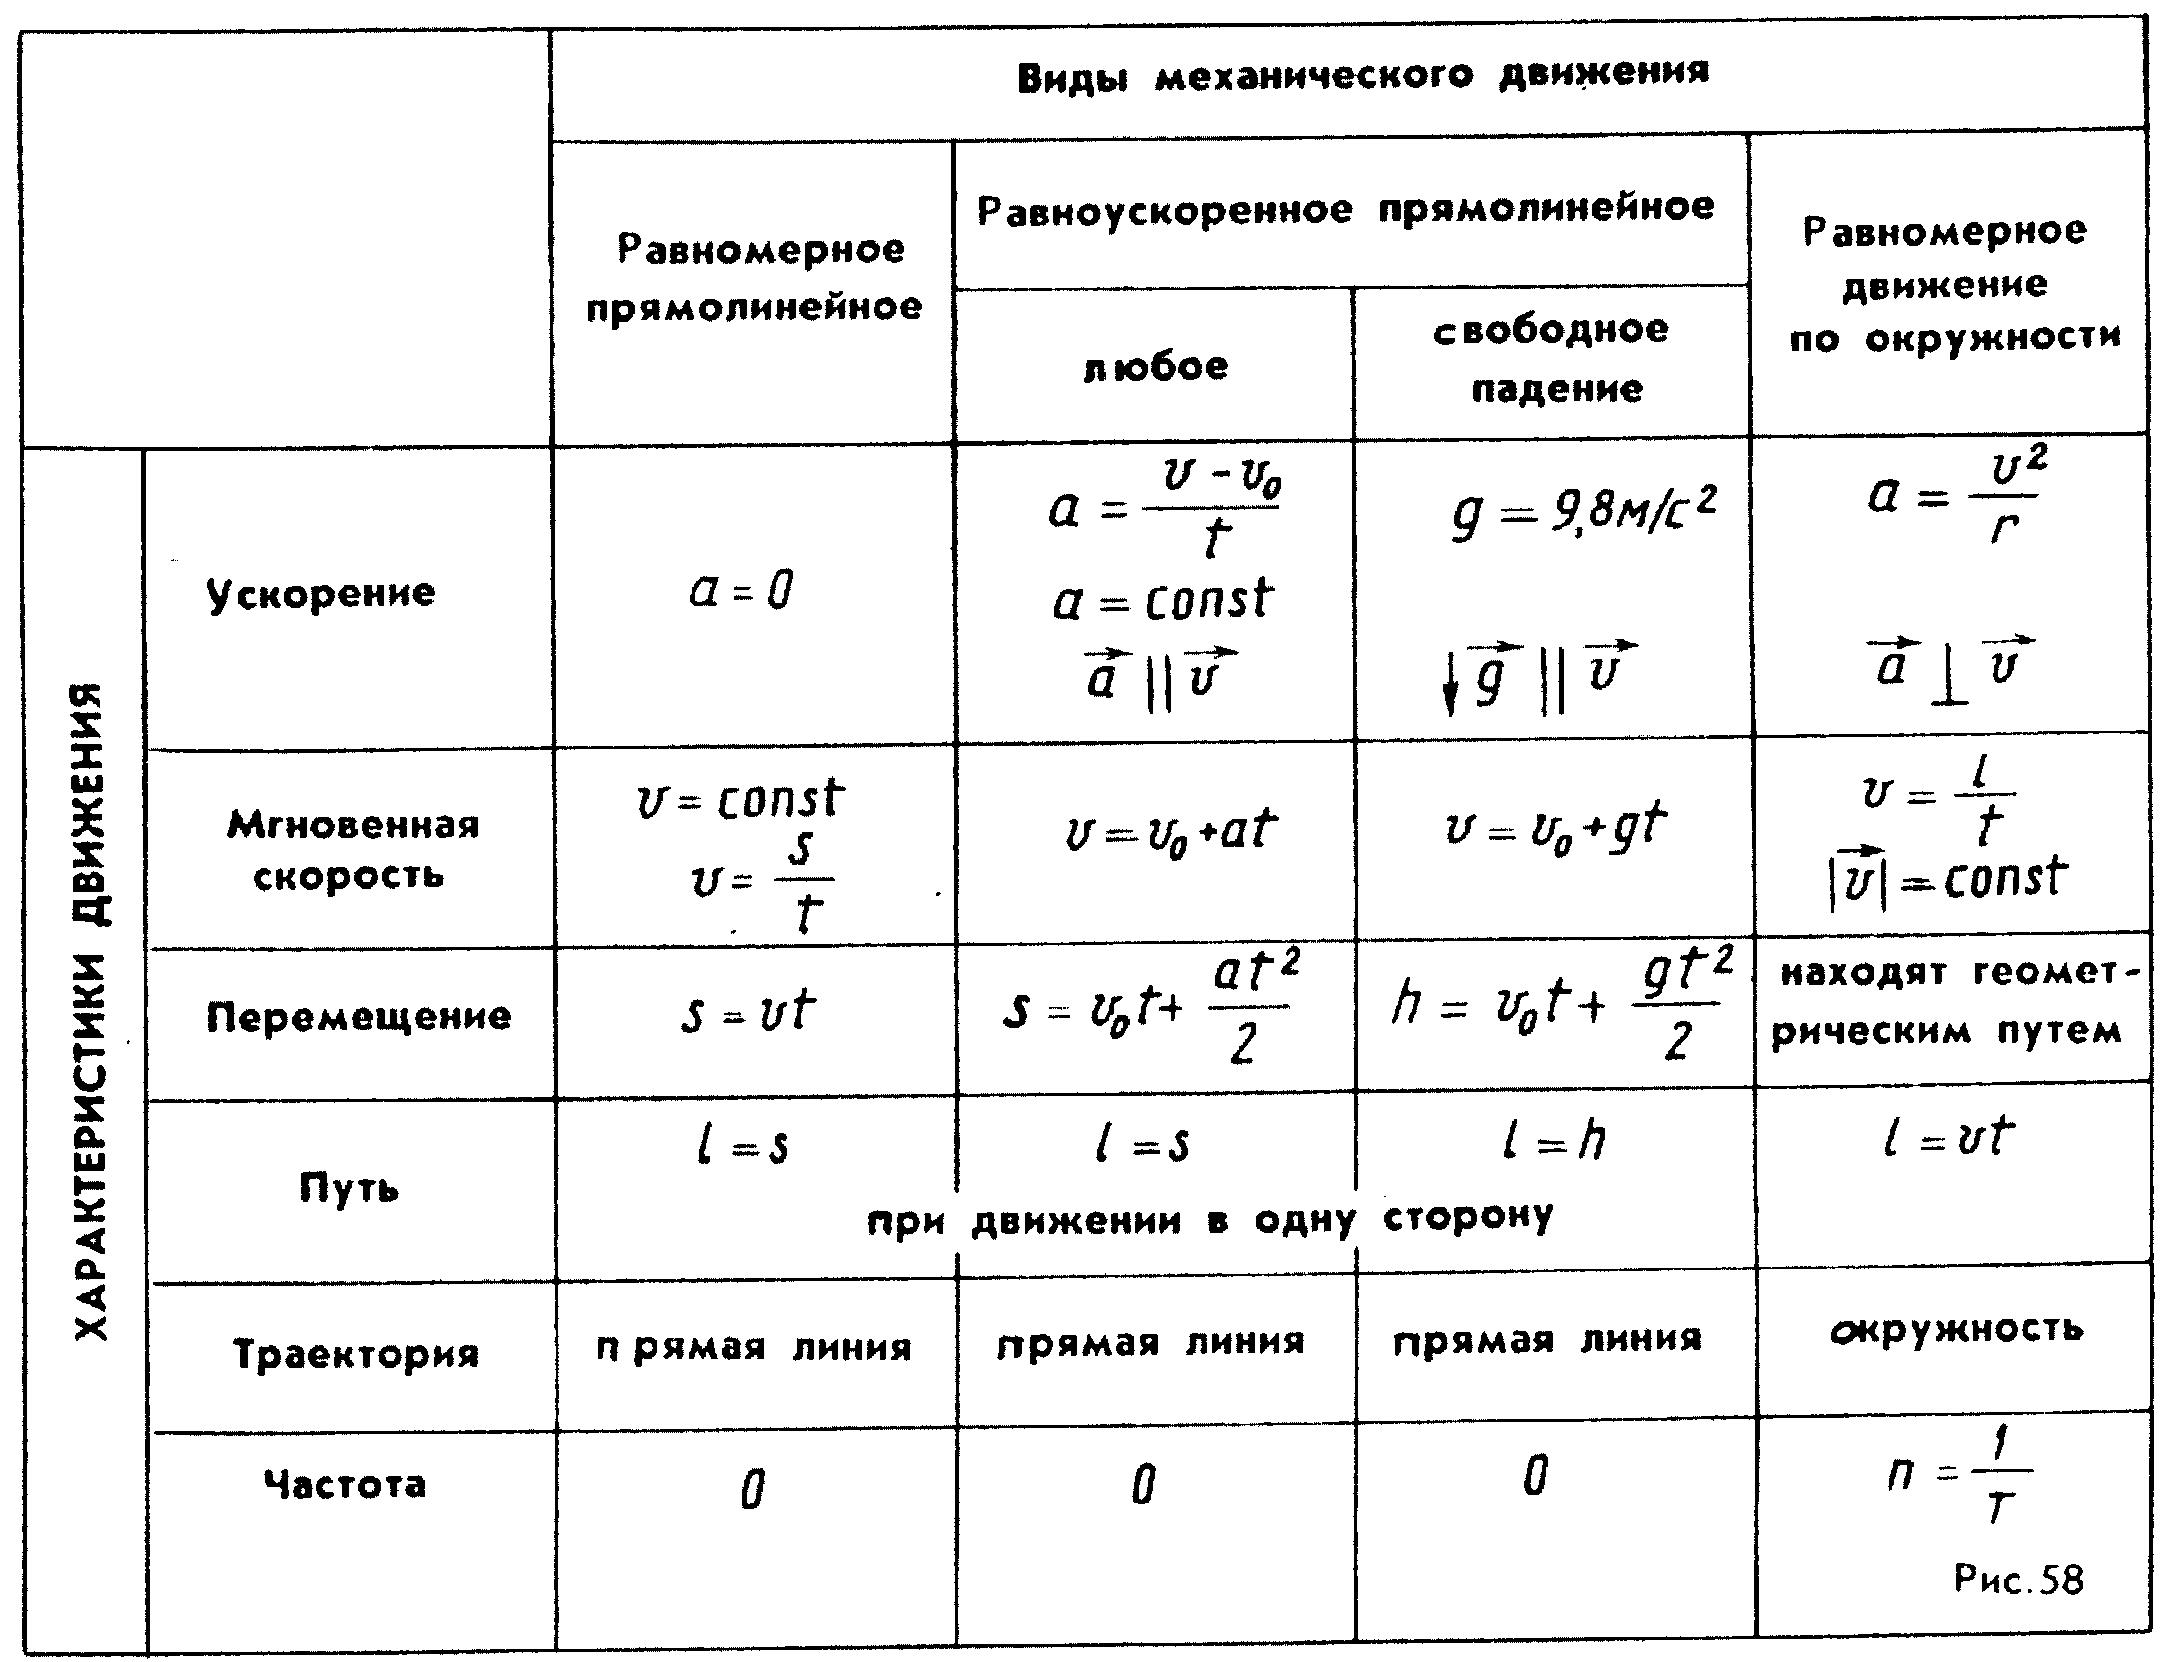 Физика 10 класс кинематика формулы